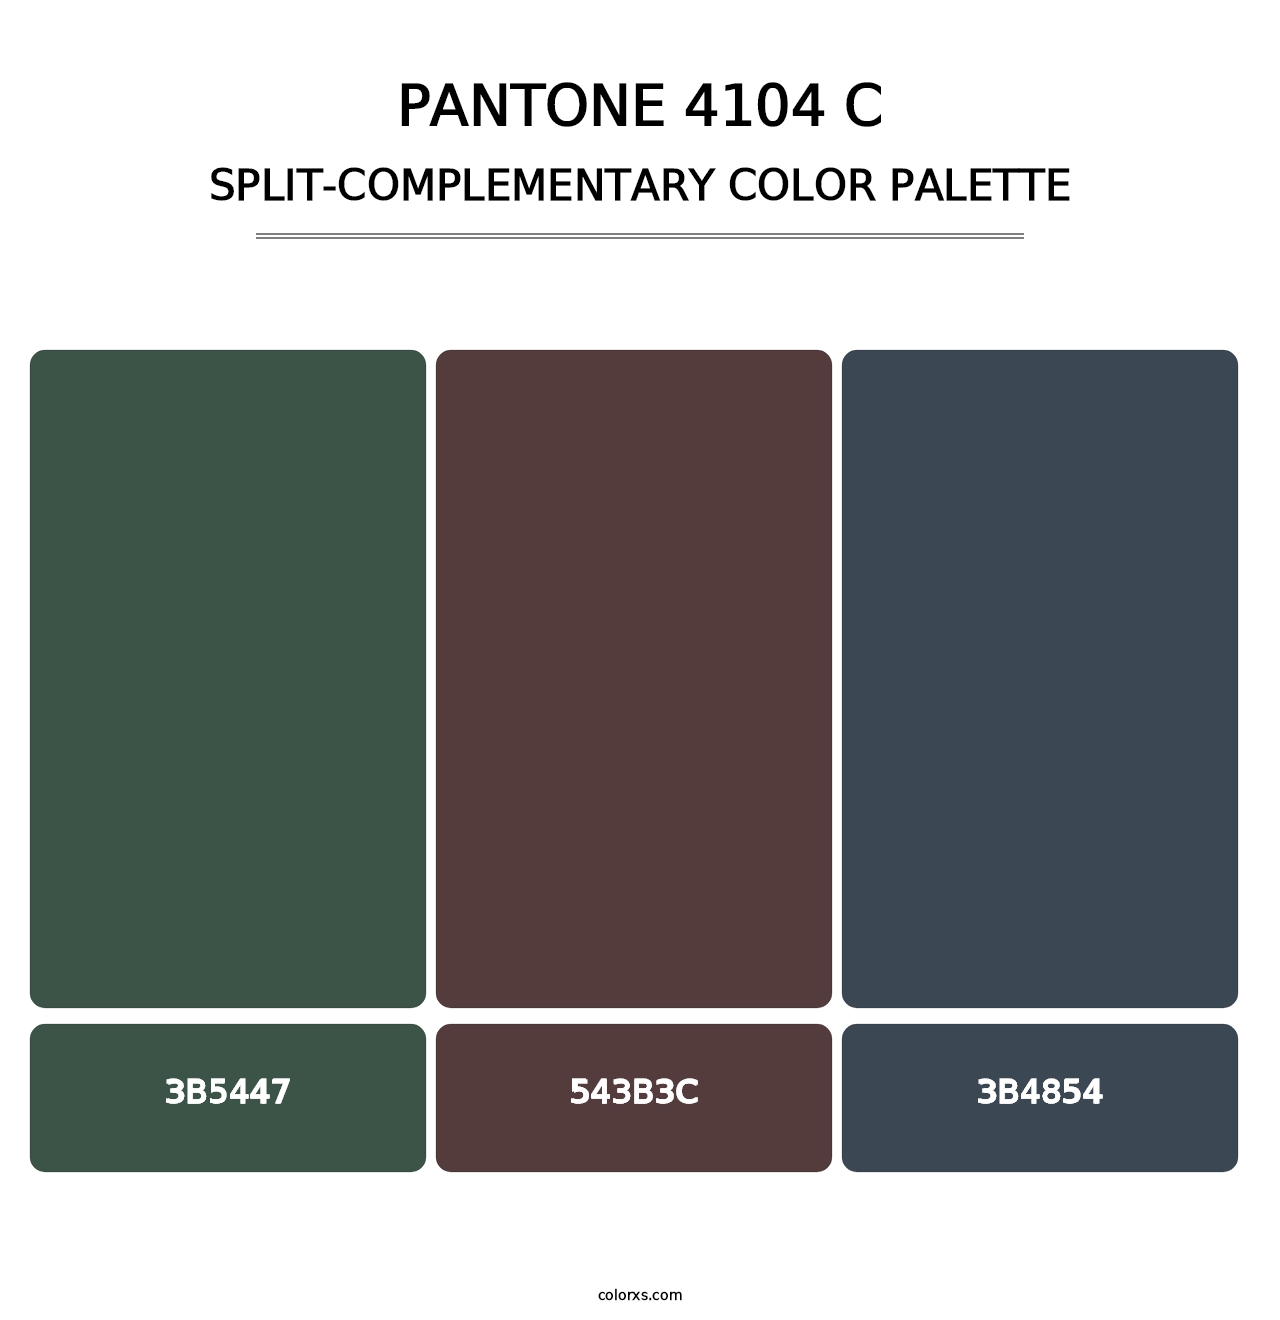 PANTONE 4104 C - Split-Complementary Color Palette